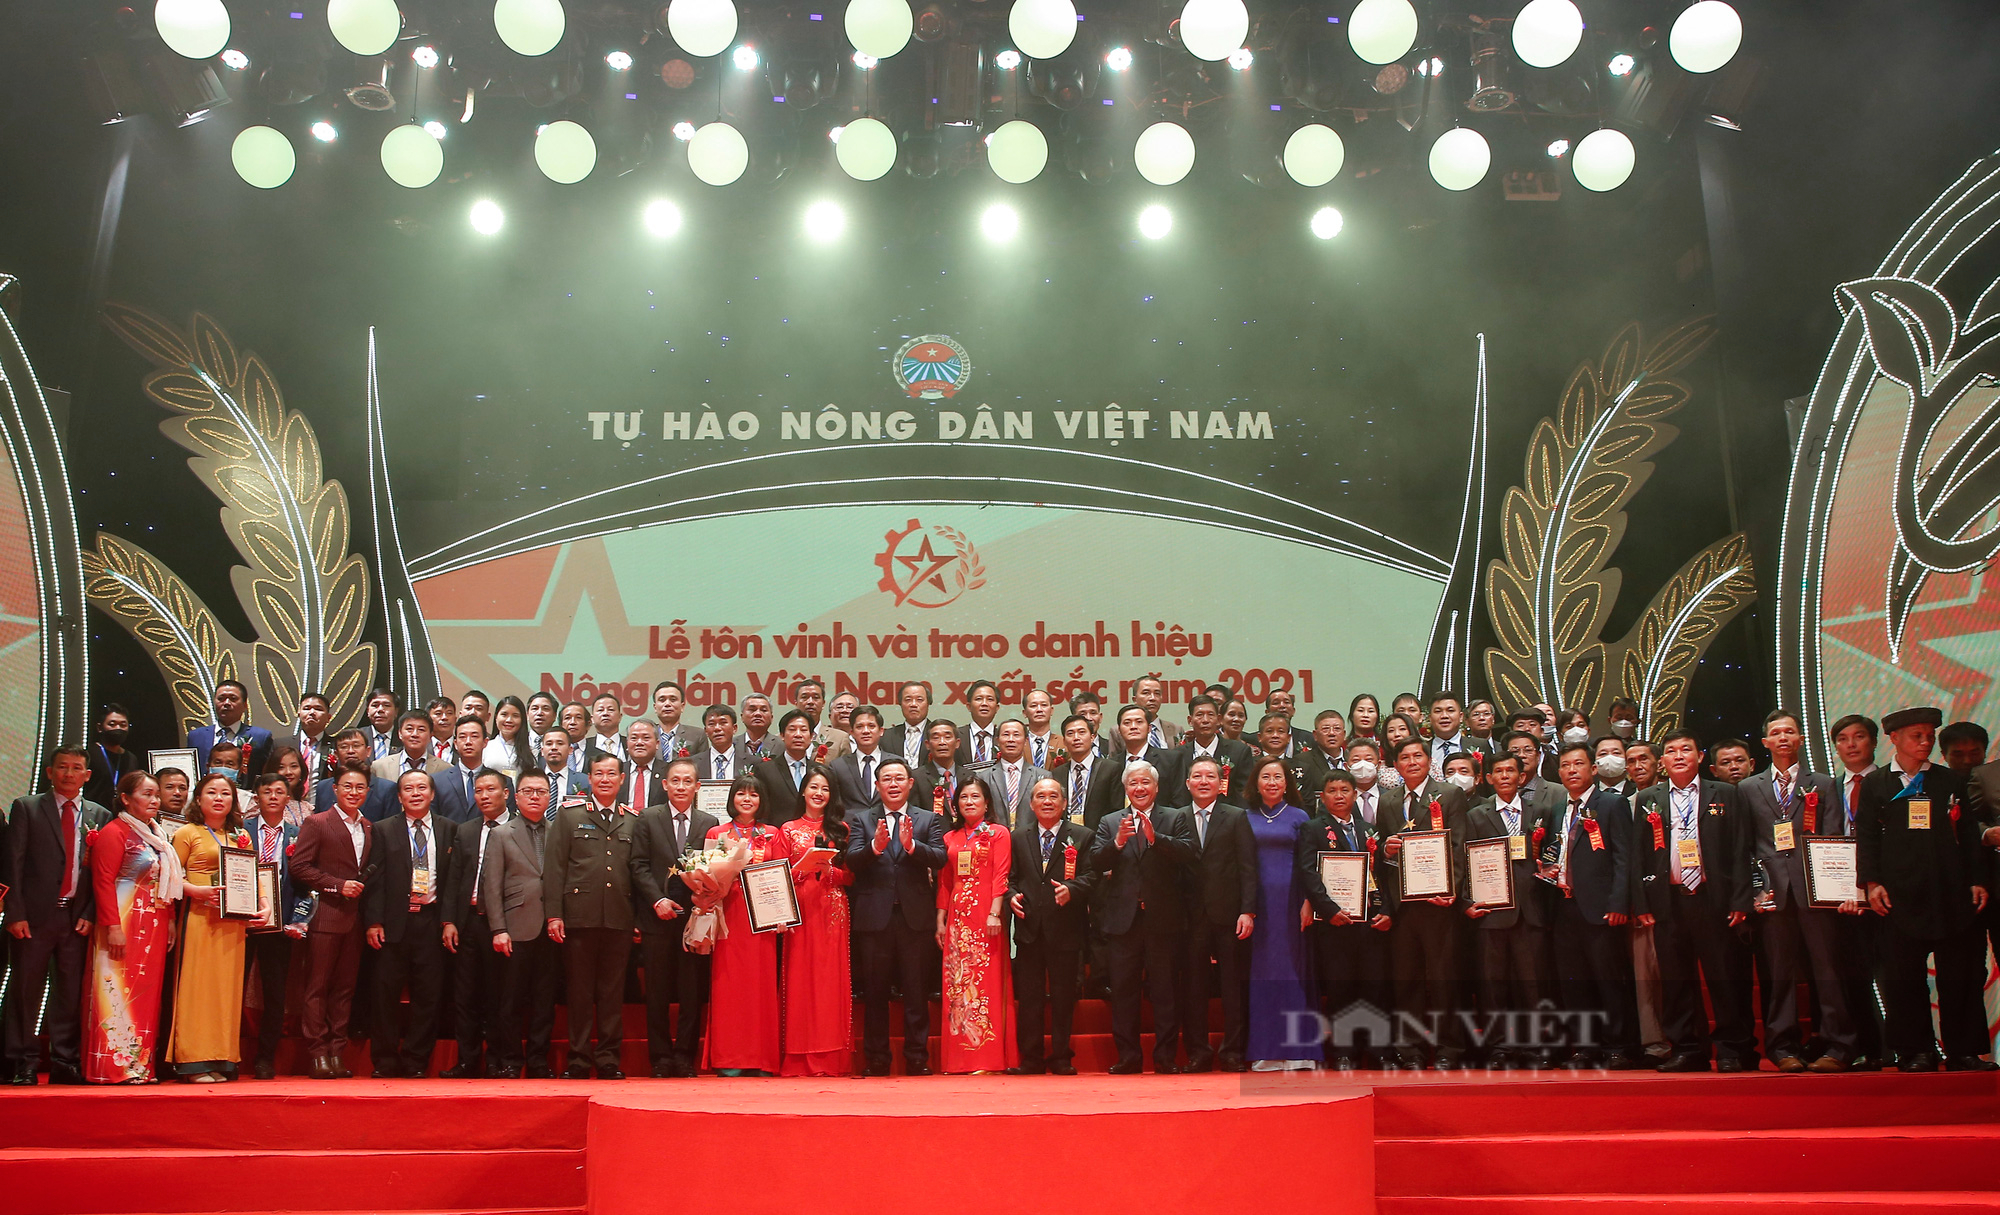 Nông dân Việt Nam xuất sắc 2021 vui mừng chụp ảnh chung với Chủ tịch Quốc hội Vương Đình Huệ - Ảnh 9.